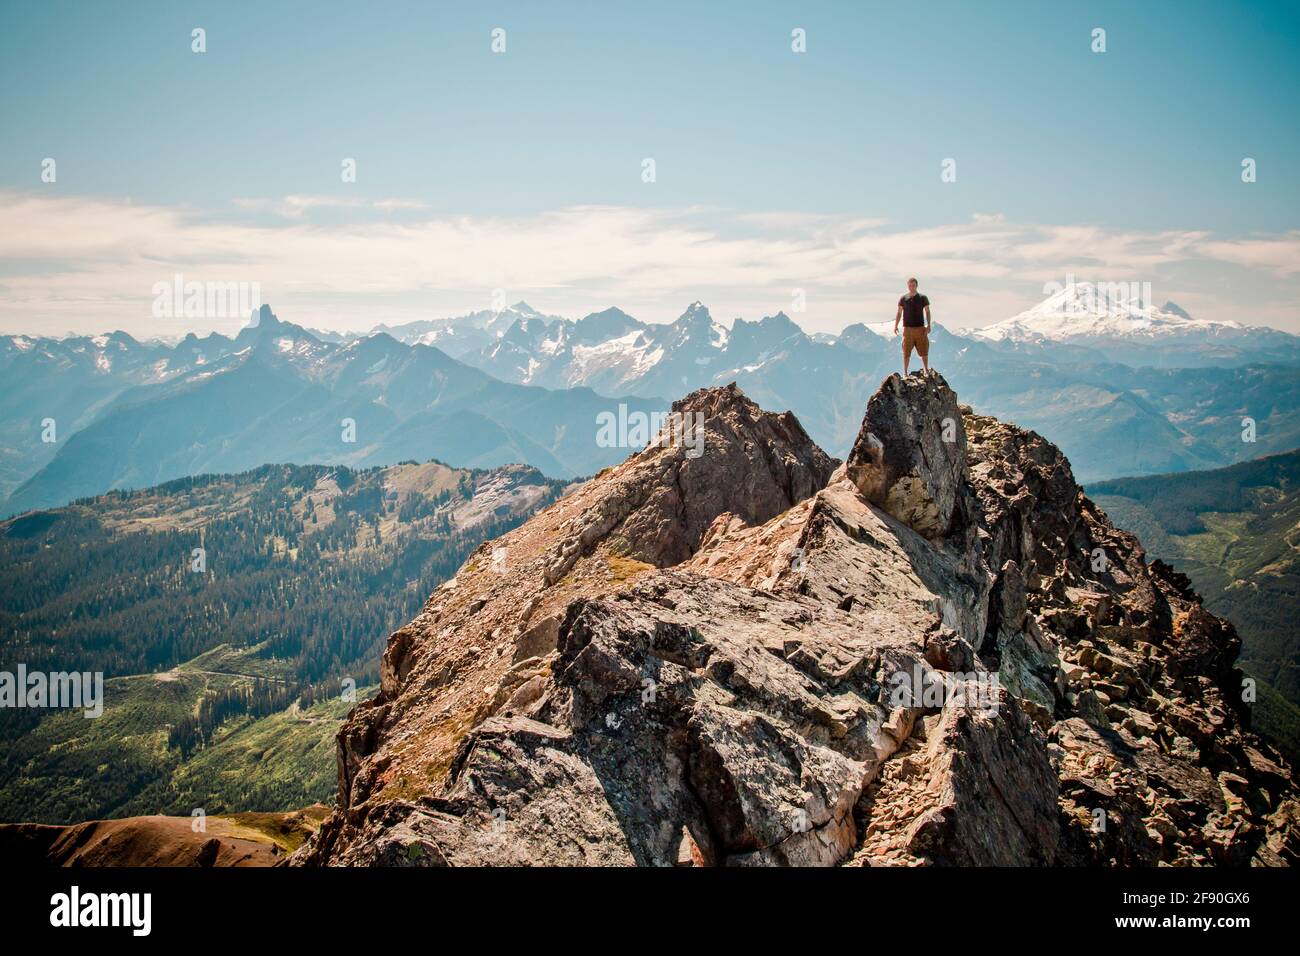 El excursionista se encuentra en la cima de la montaña con vistas panorámicas detrás. Foto de stock